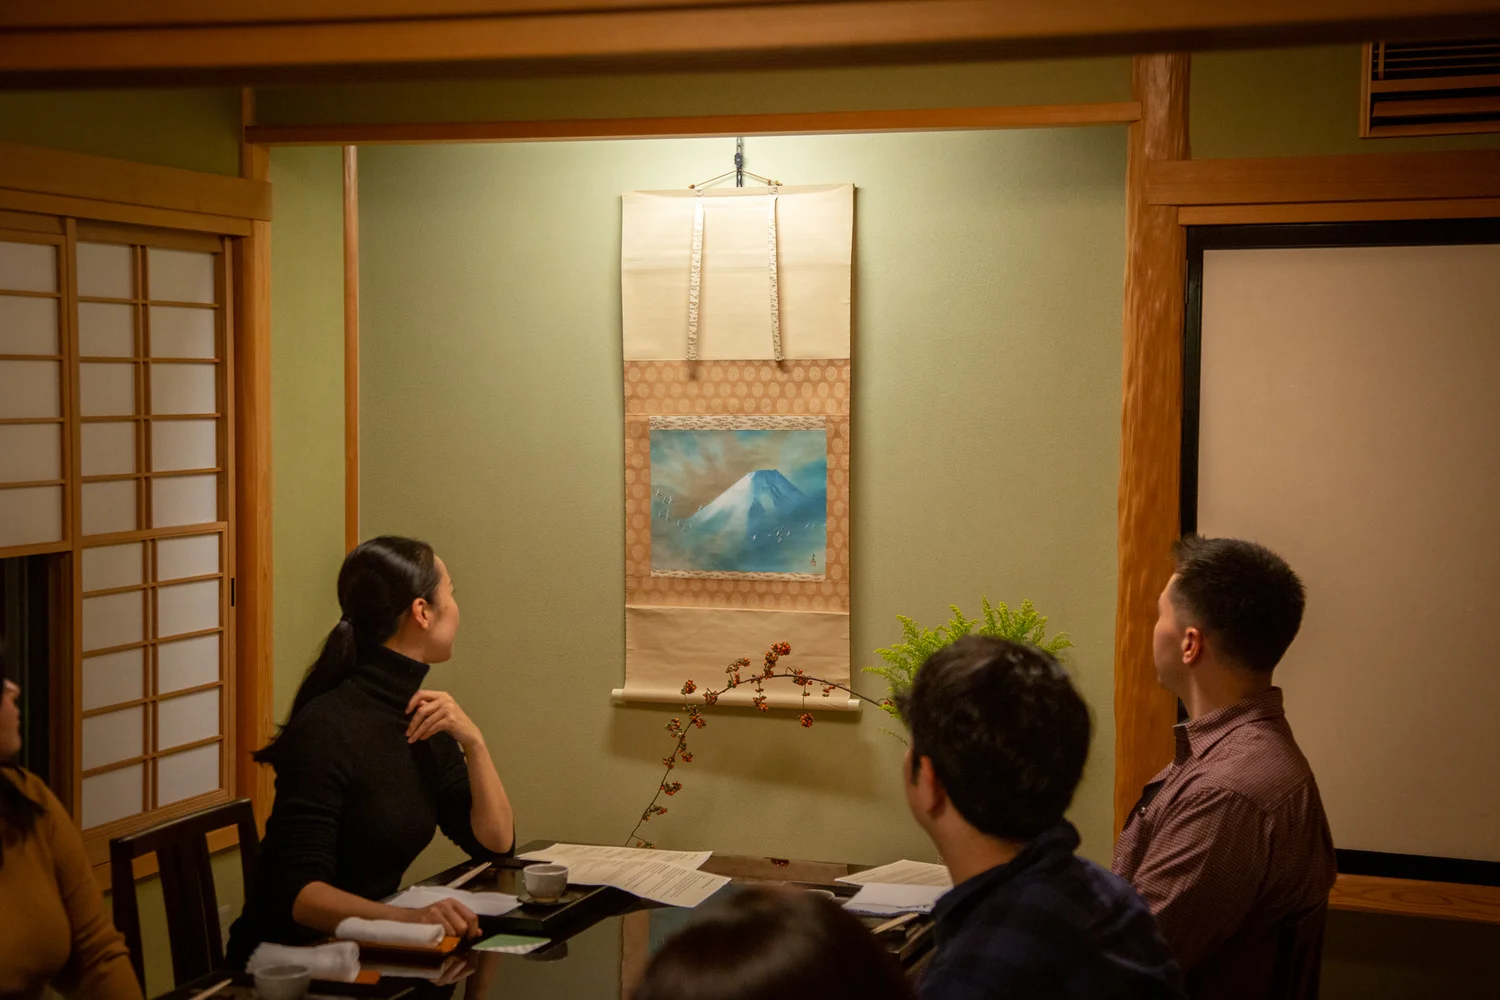 Kaiseki Lunch & Tea Ceremony at Kyoyuzen Hanamiyako in Hitachinaka, Ibaraki Prefecture